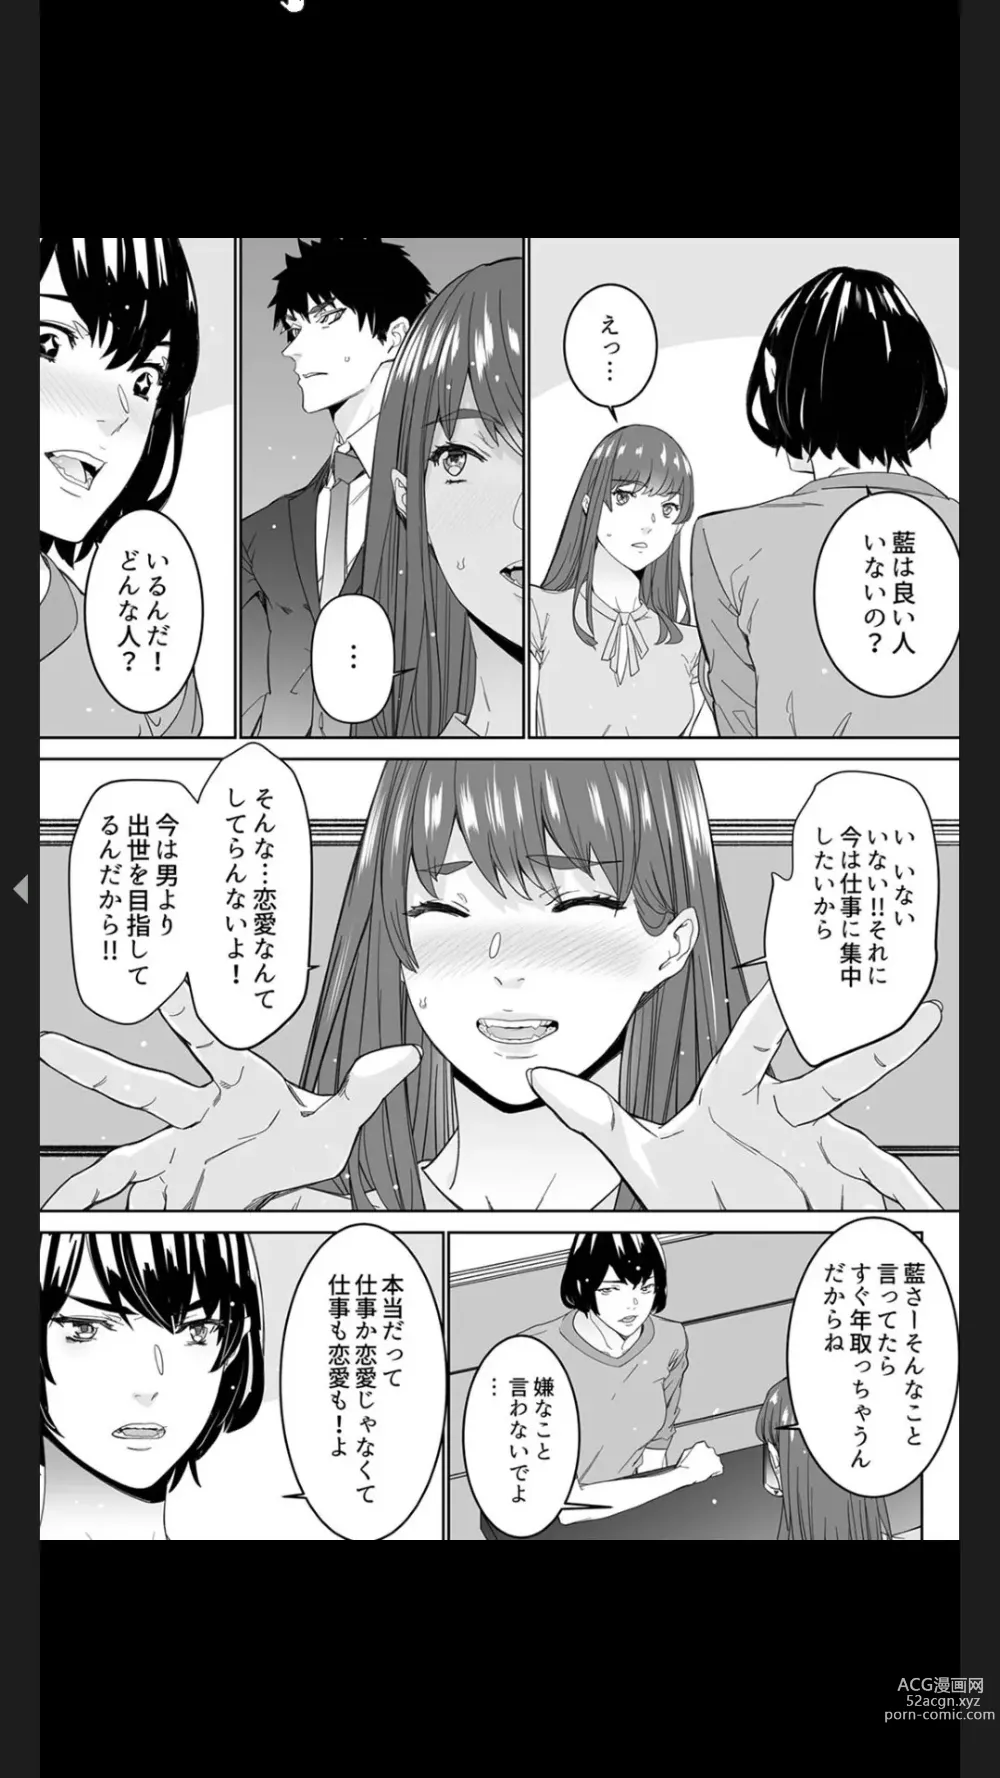 Page 121 of manga Koitsu no SEX, Do-S Sugi...!